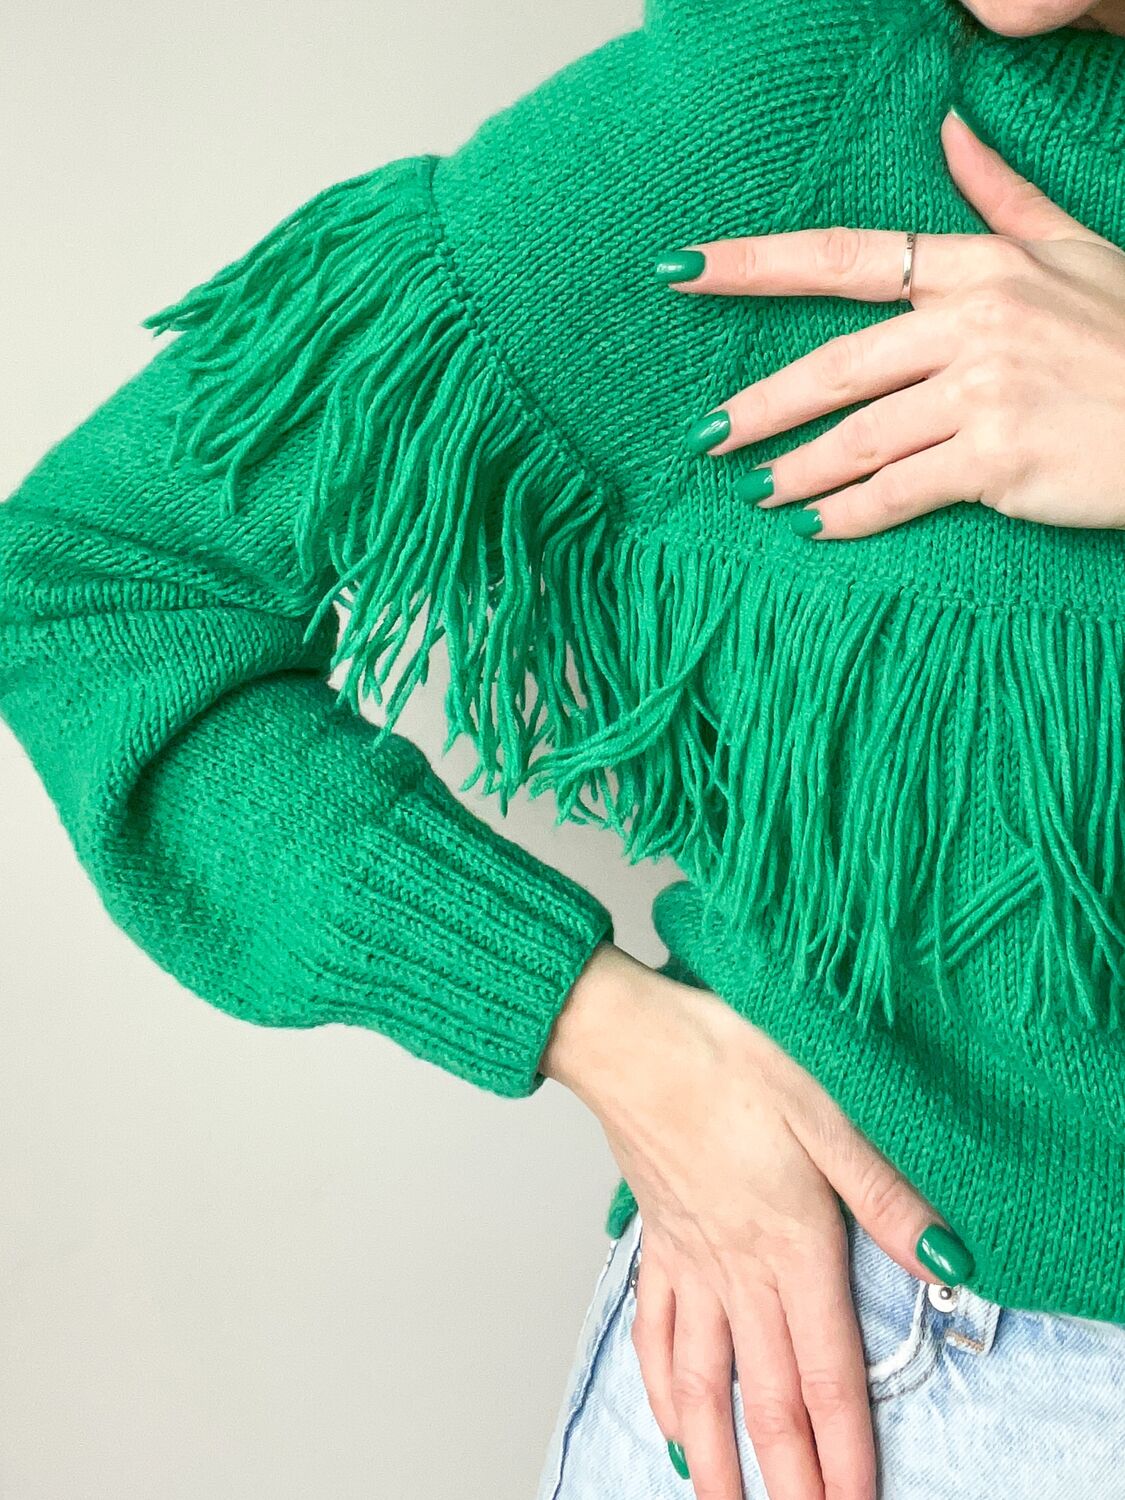 Как носить свитер с бахромой этой весной — ещё одна идея со съемок новой «Сплетницы» | Glamour